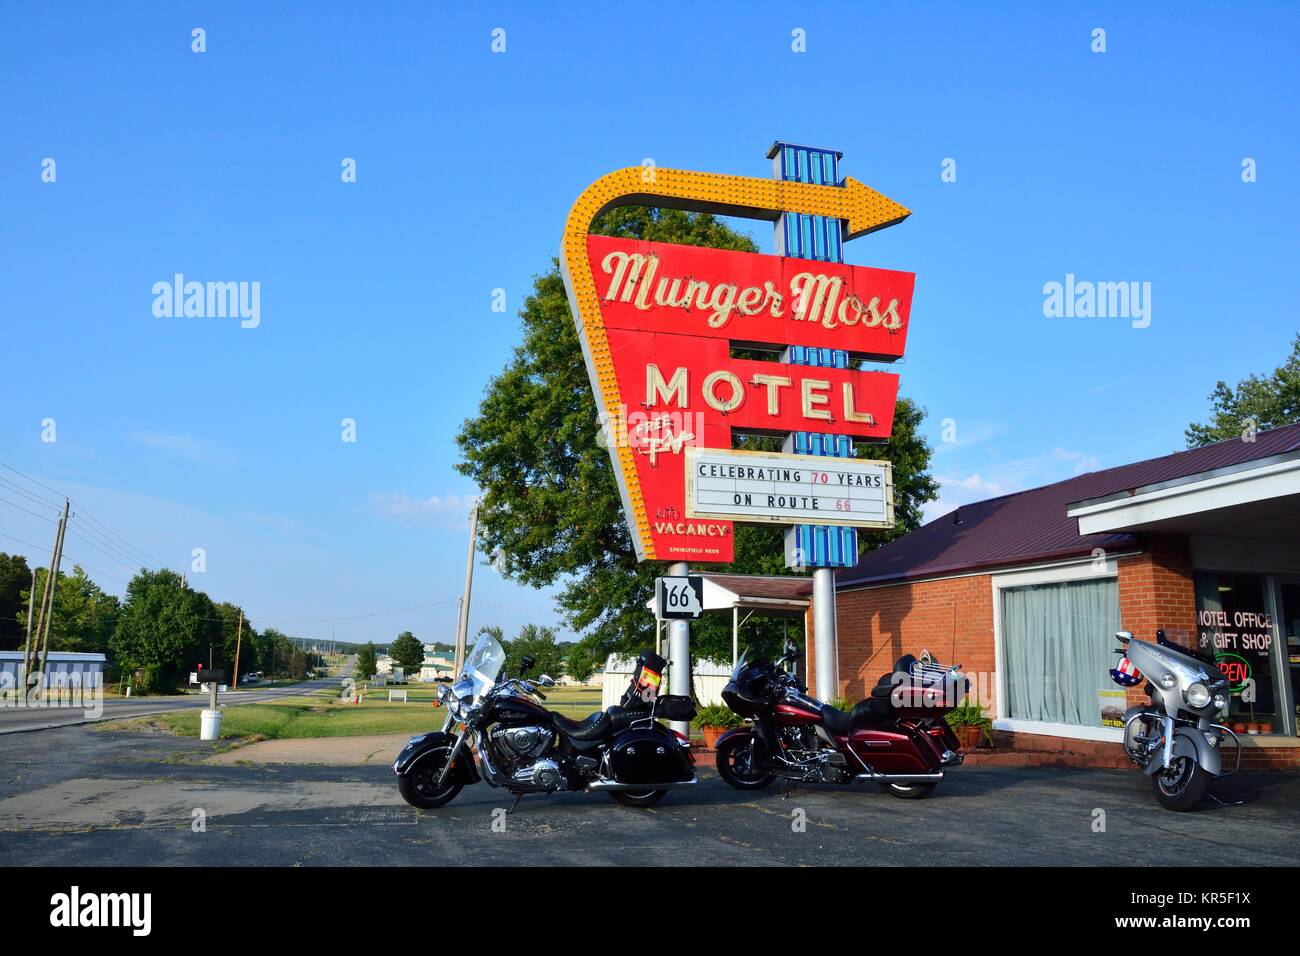 Libanon, Missouri, USA - 18. Juli 2017: Munger Moss Motel und vintage Leuchtreklame auf der historischen Route 66 in Missouri. Stockfoto